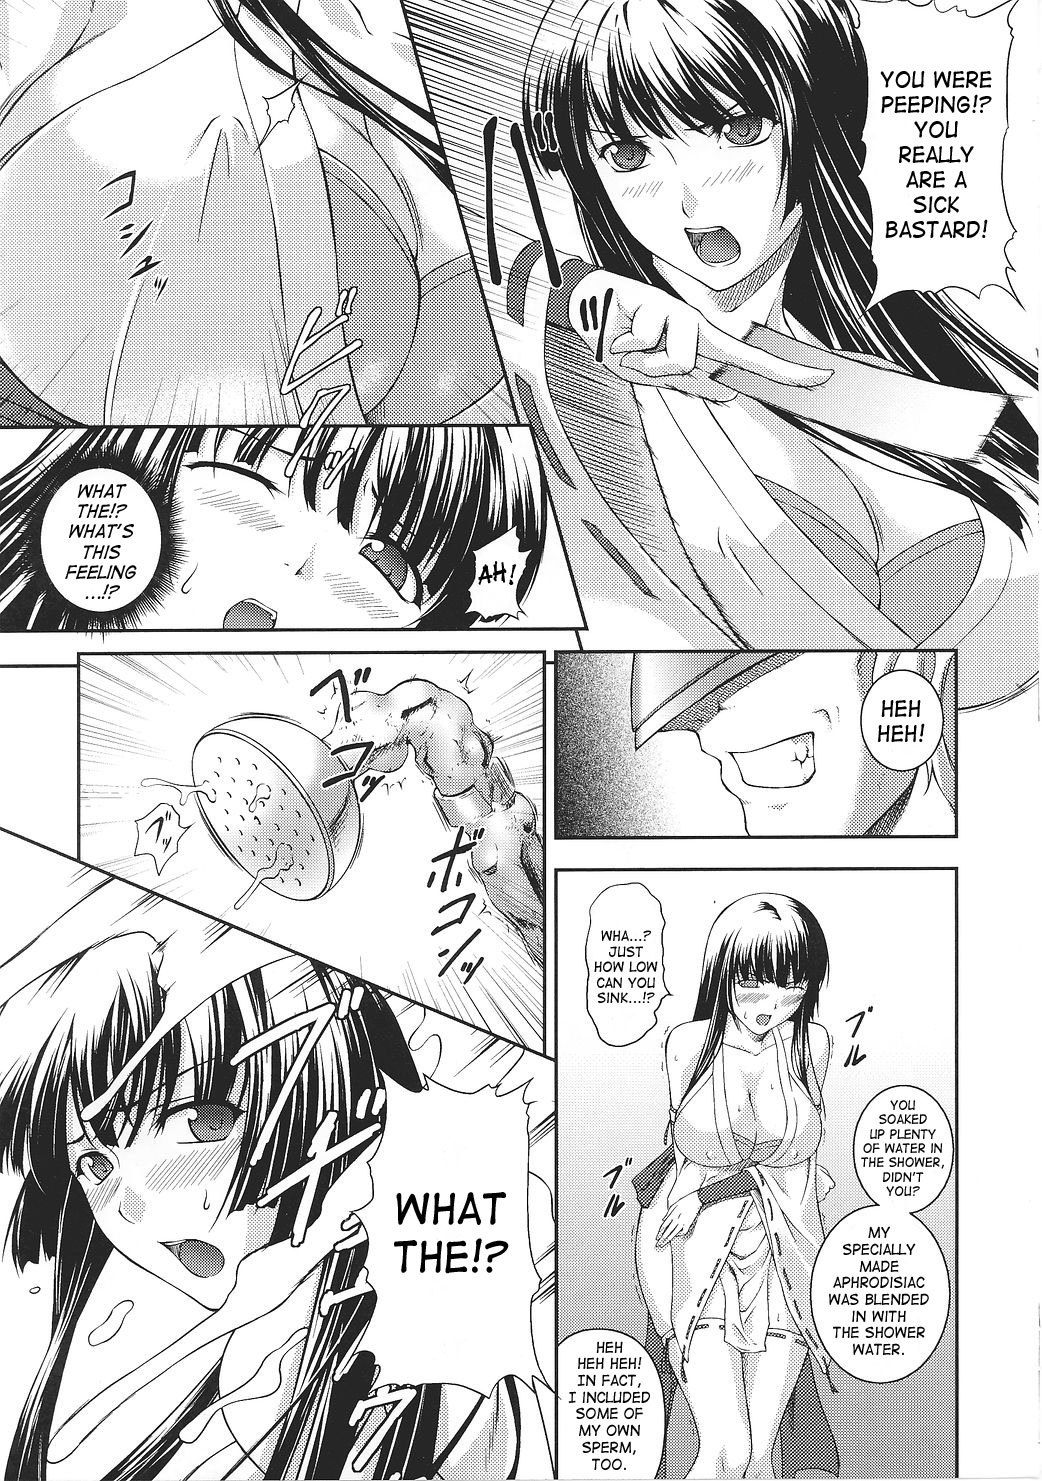 Asuka and Shizuru 21 hentai manga